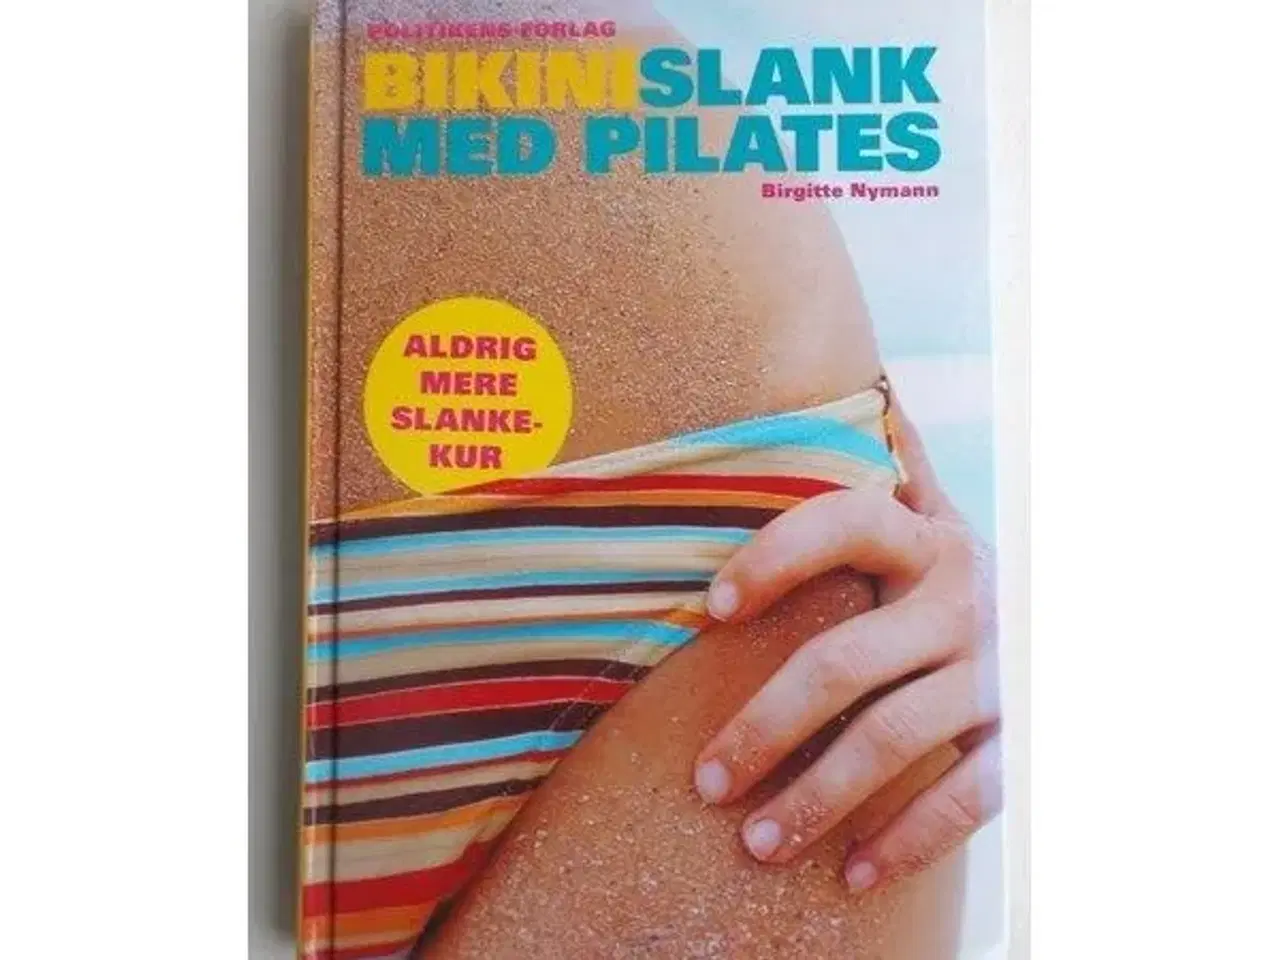 Billede 1 - Bikinislank med pilates